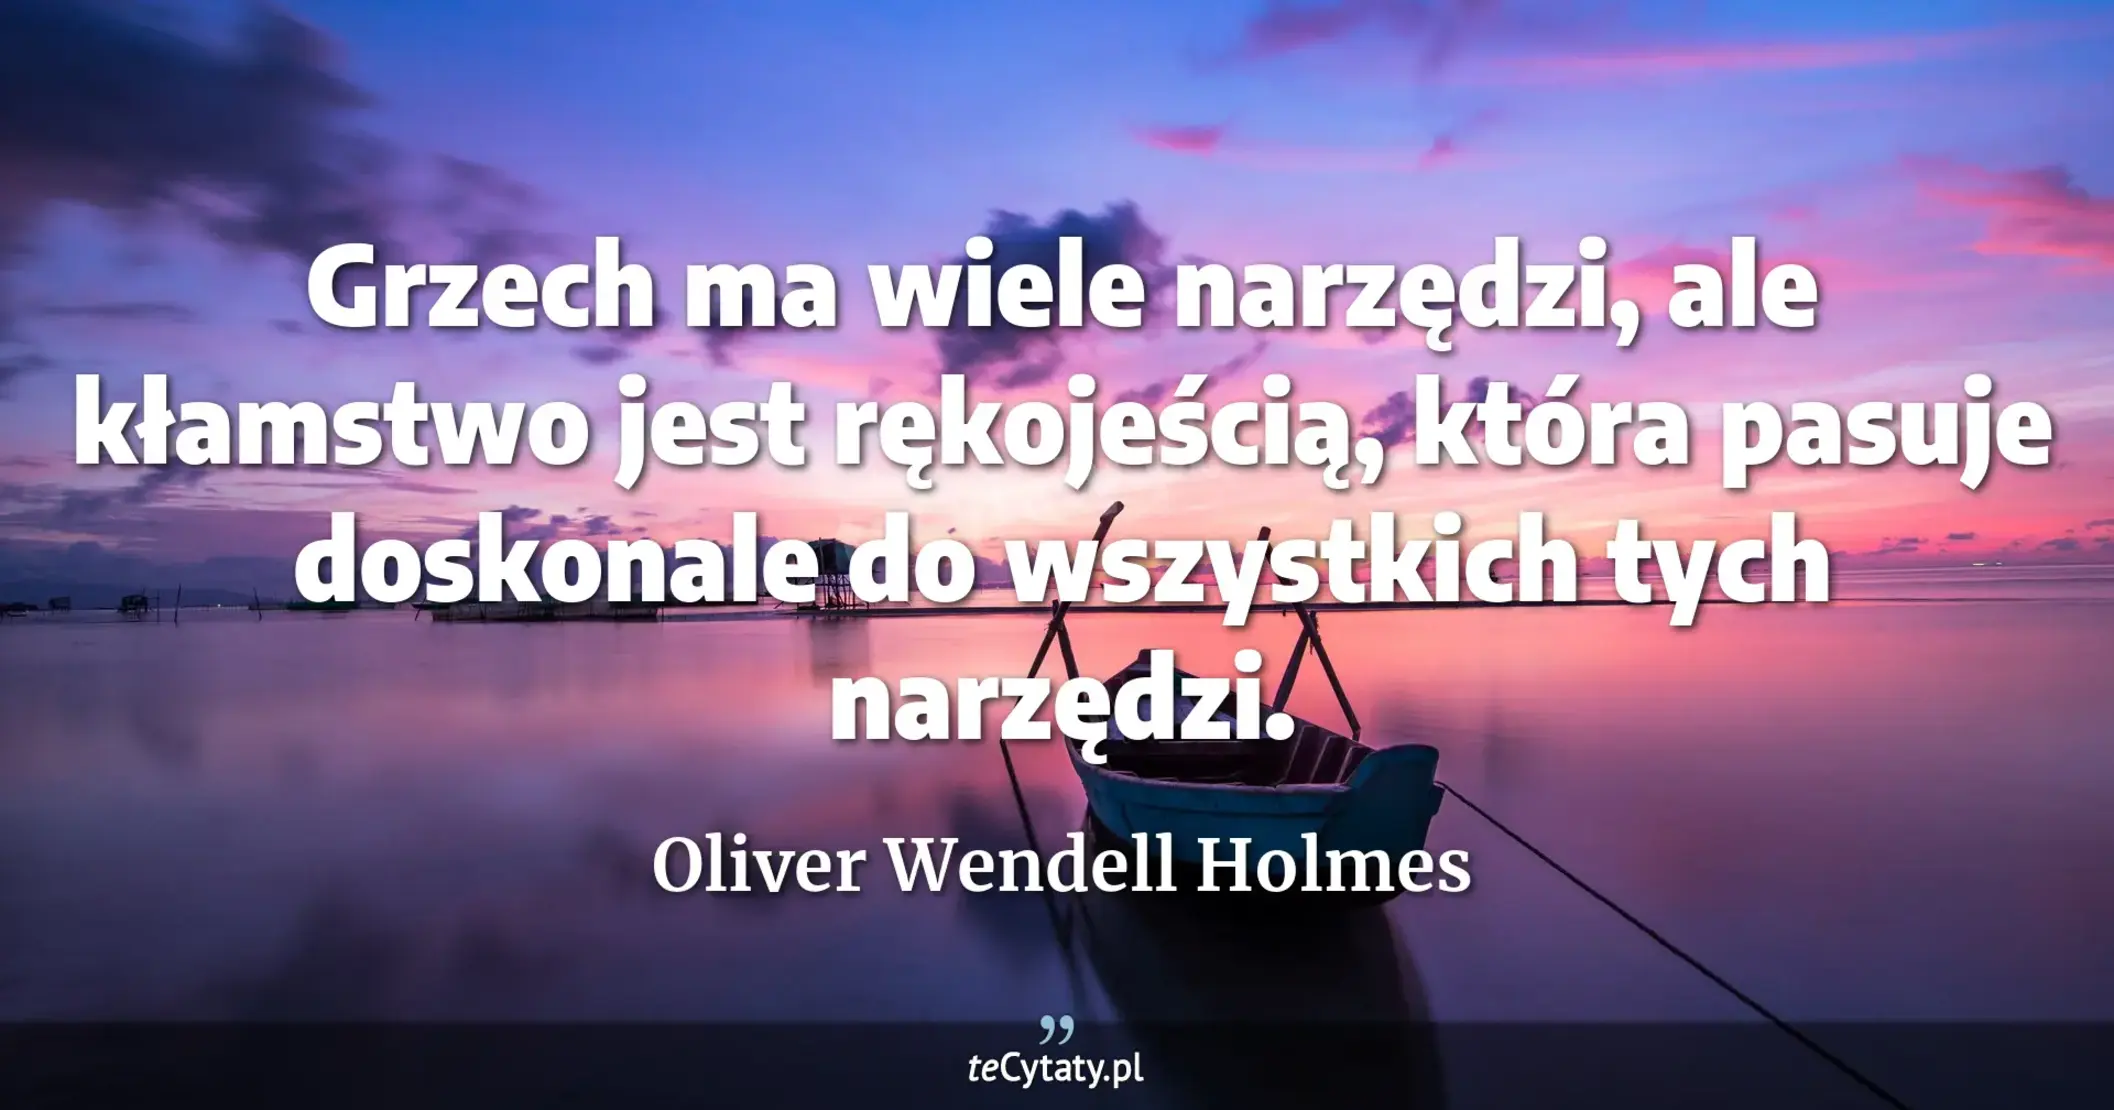 Grzech ma wiele narzędzi, ale kłamstwo jest rękojeścią, która pasuje doskonale do wszystkich tych narzędzi. - Oliver Wendell Holmes